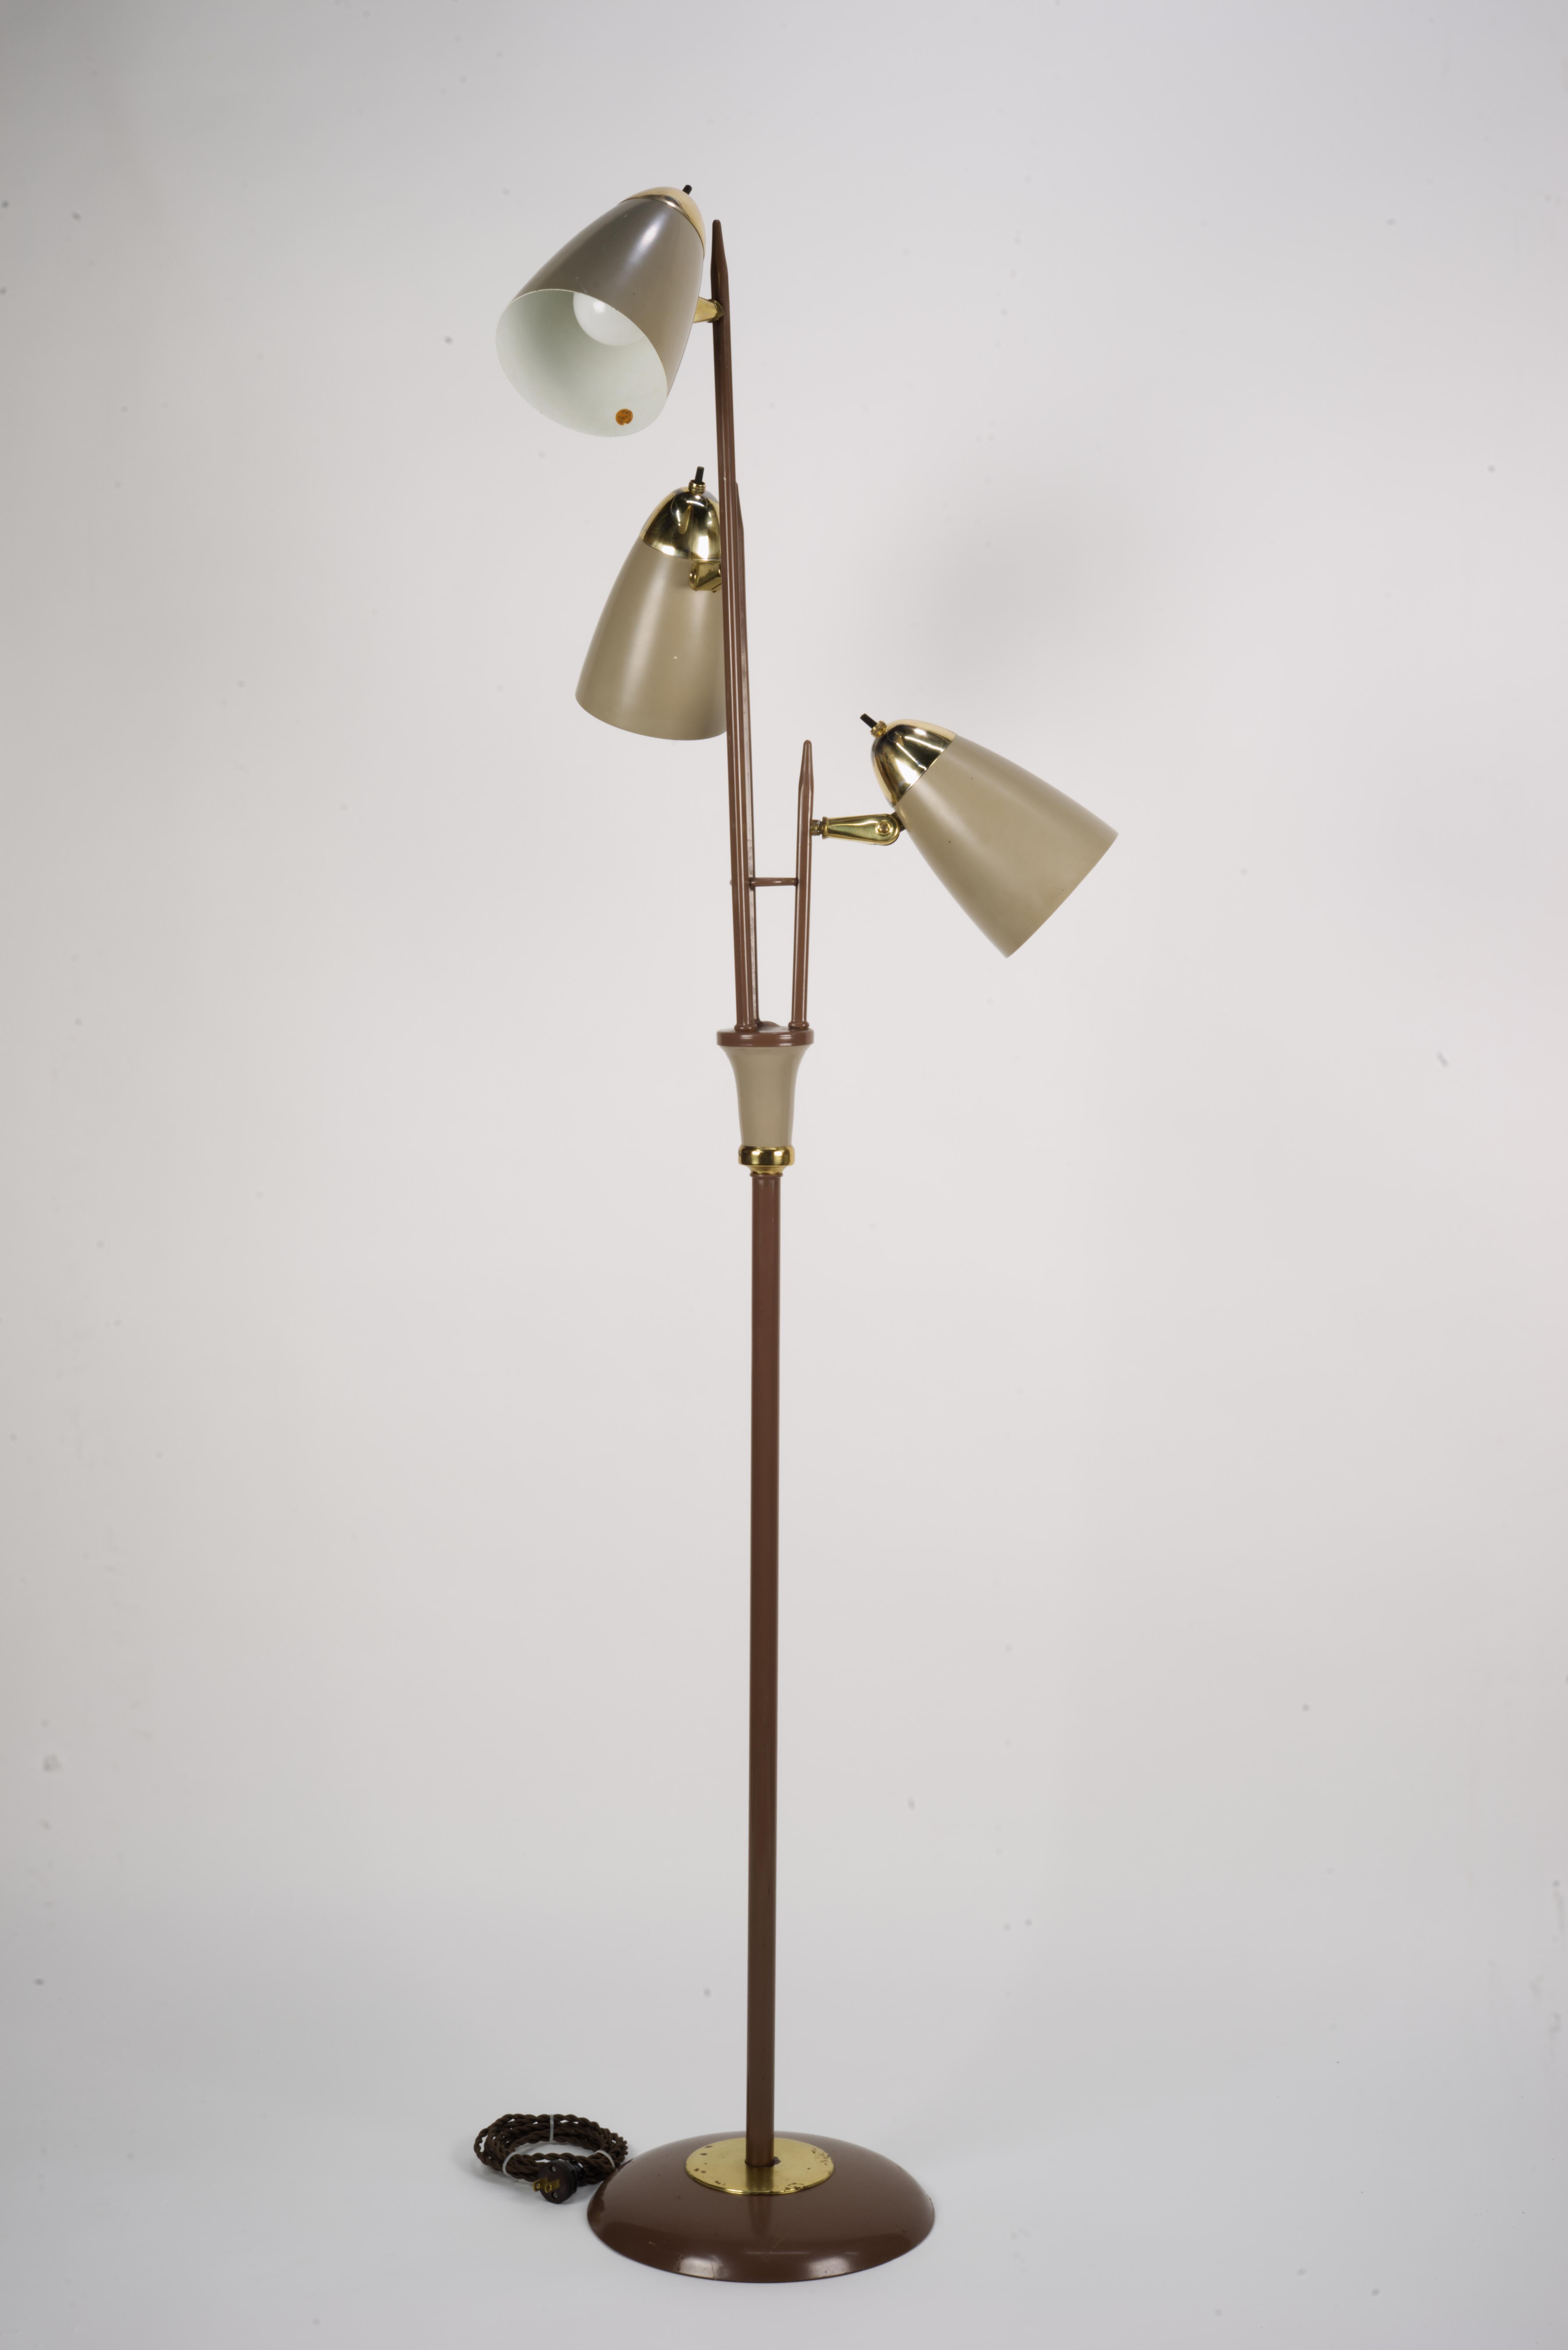 Gerald Thurston Triennale Stehleuchte. Dies ist ein bekanntes, ikonisches Design. 
Lampe, die gründlich gereinigt wurde. 
Die Steckdosen wurden durch hochwertige UL-gelistete Geräte ersetzt. Alle Lichter funktionieren und die Köpfe sind verstellbar.